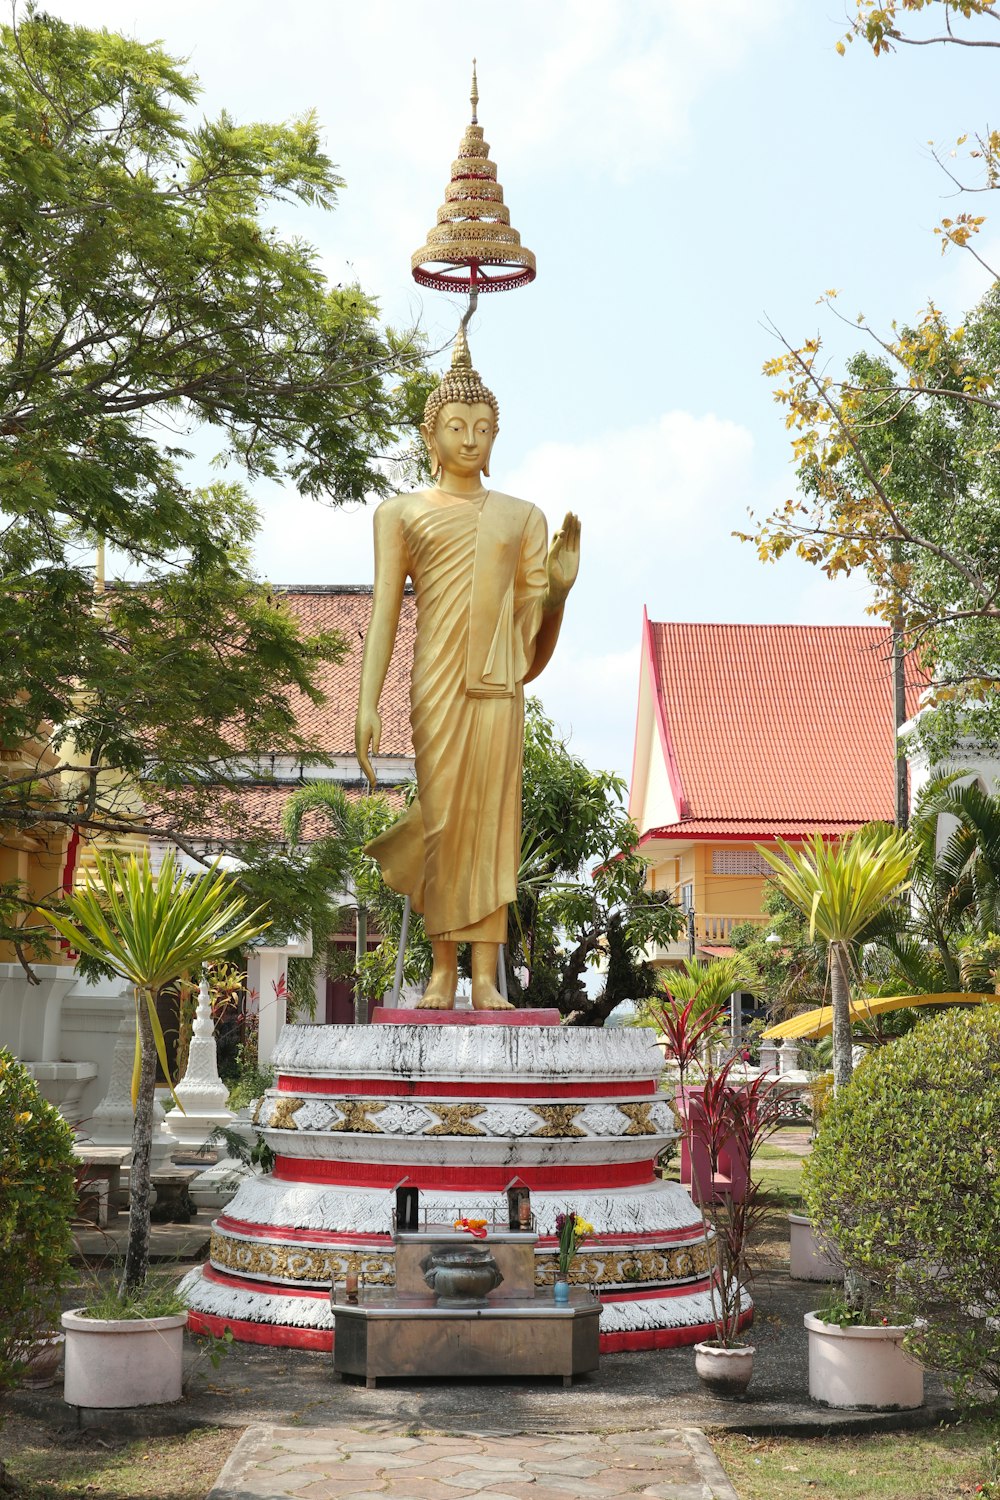 a large golden buddha statue in a garden